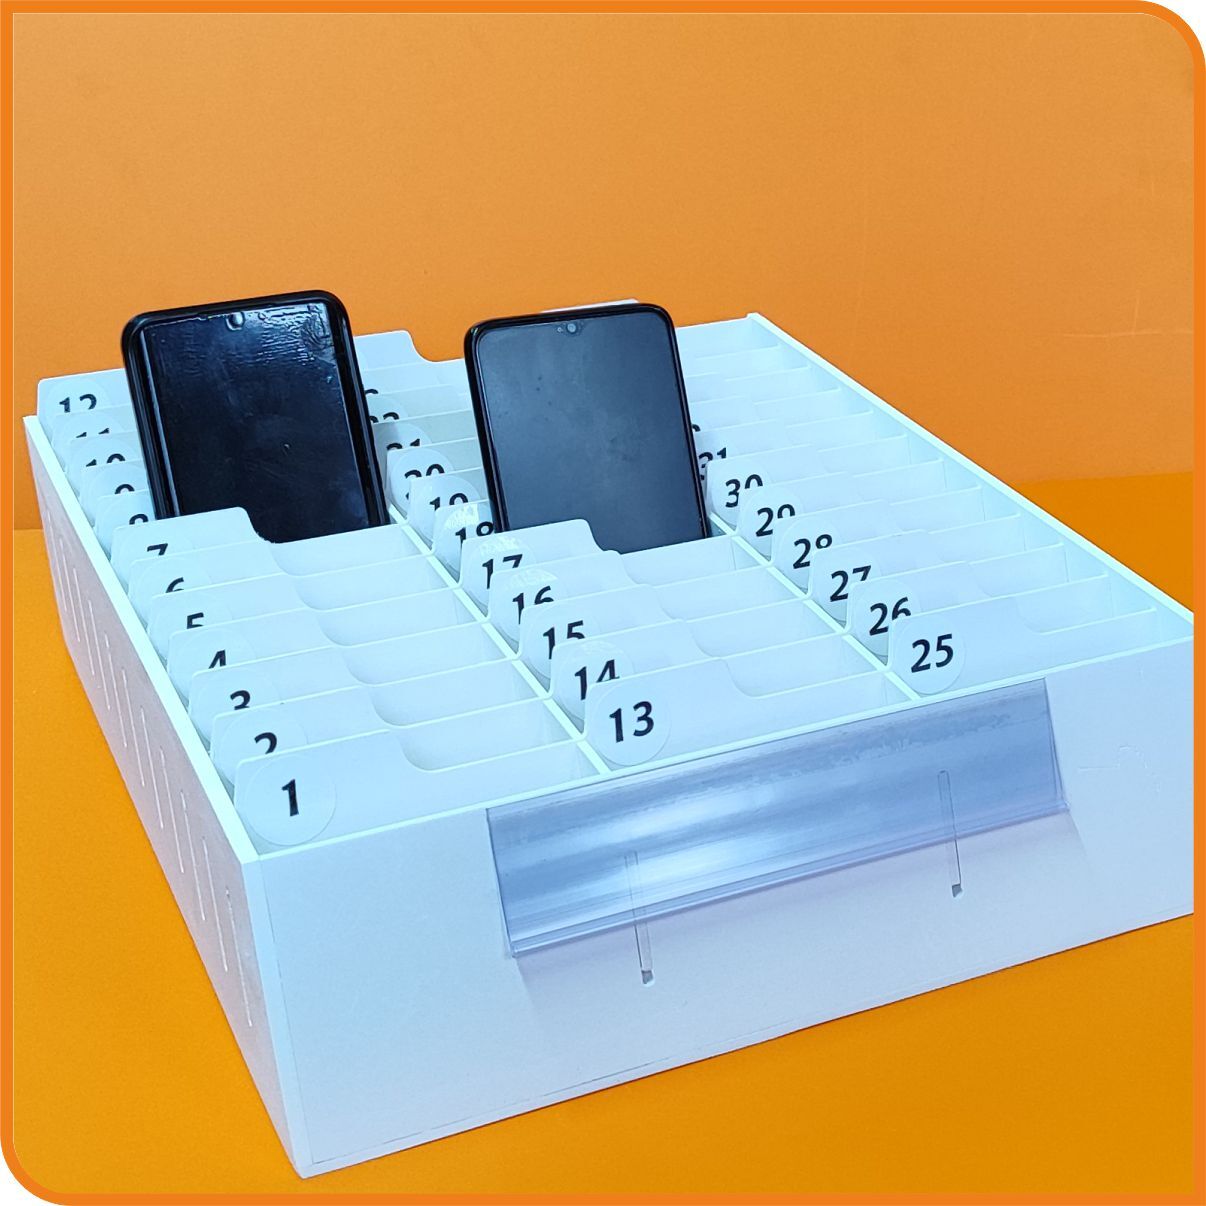 Органайзер ПВХ с ячейками для 30 телефонов с номерами и кармашком для подписывания